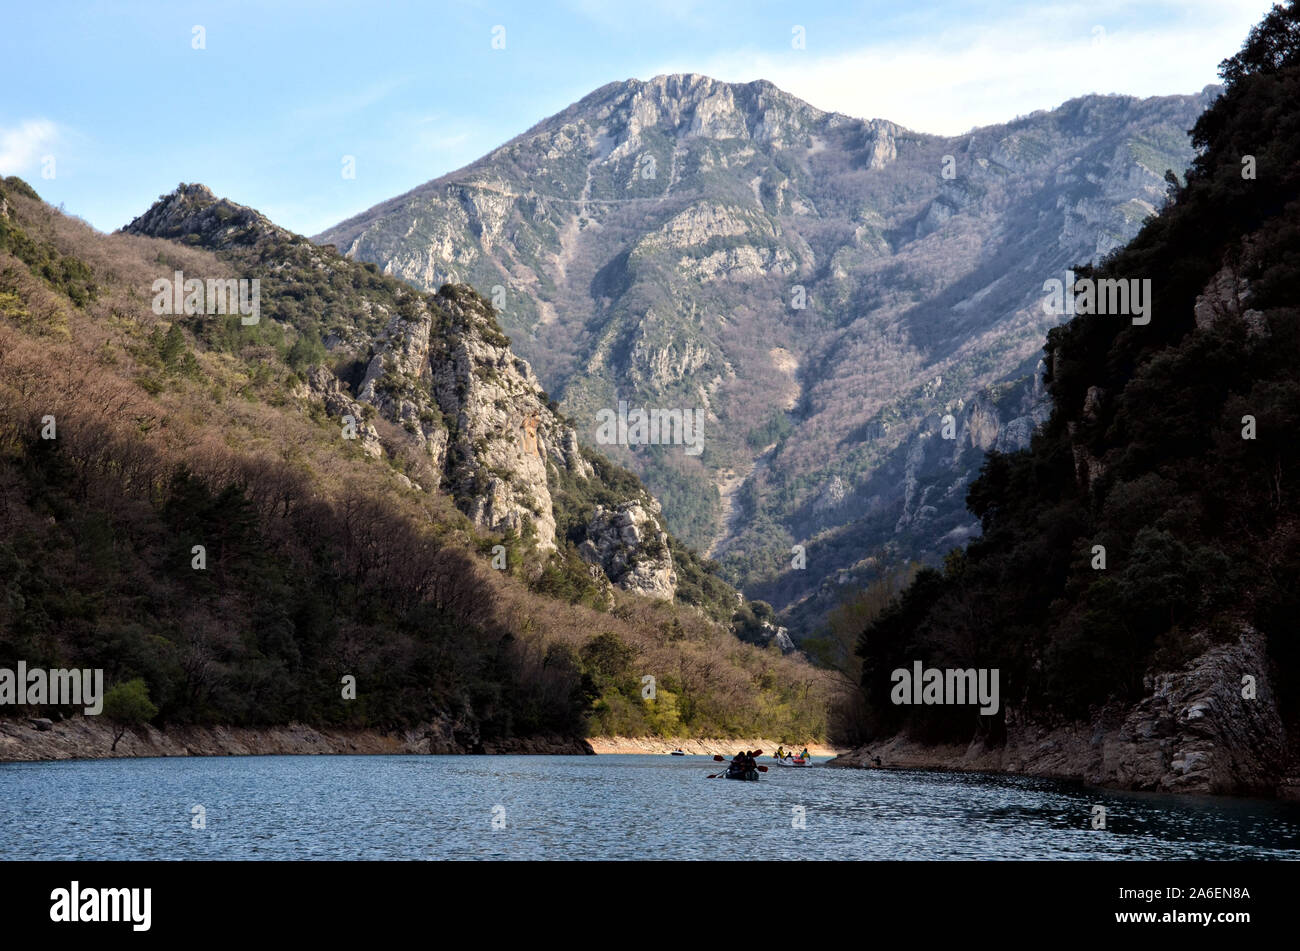 Balade en canoë dans les gorges du Verdon dans le sud de la France Alpes de Haute Provence Banque D'Images